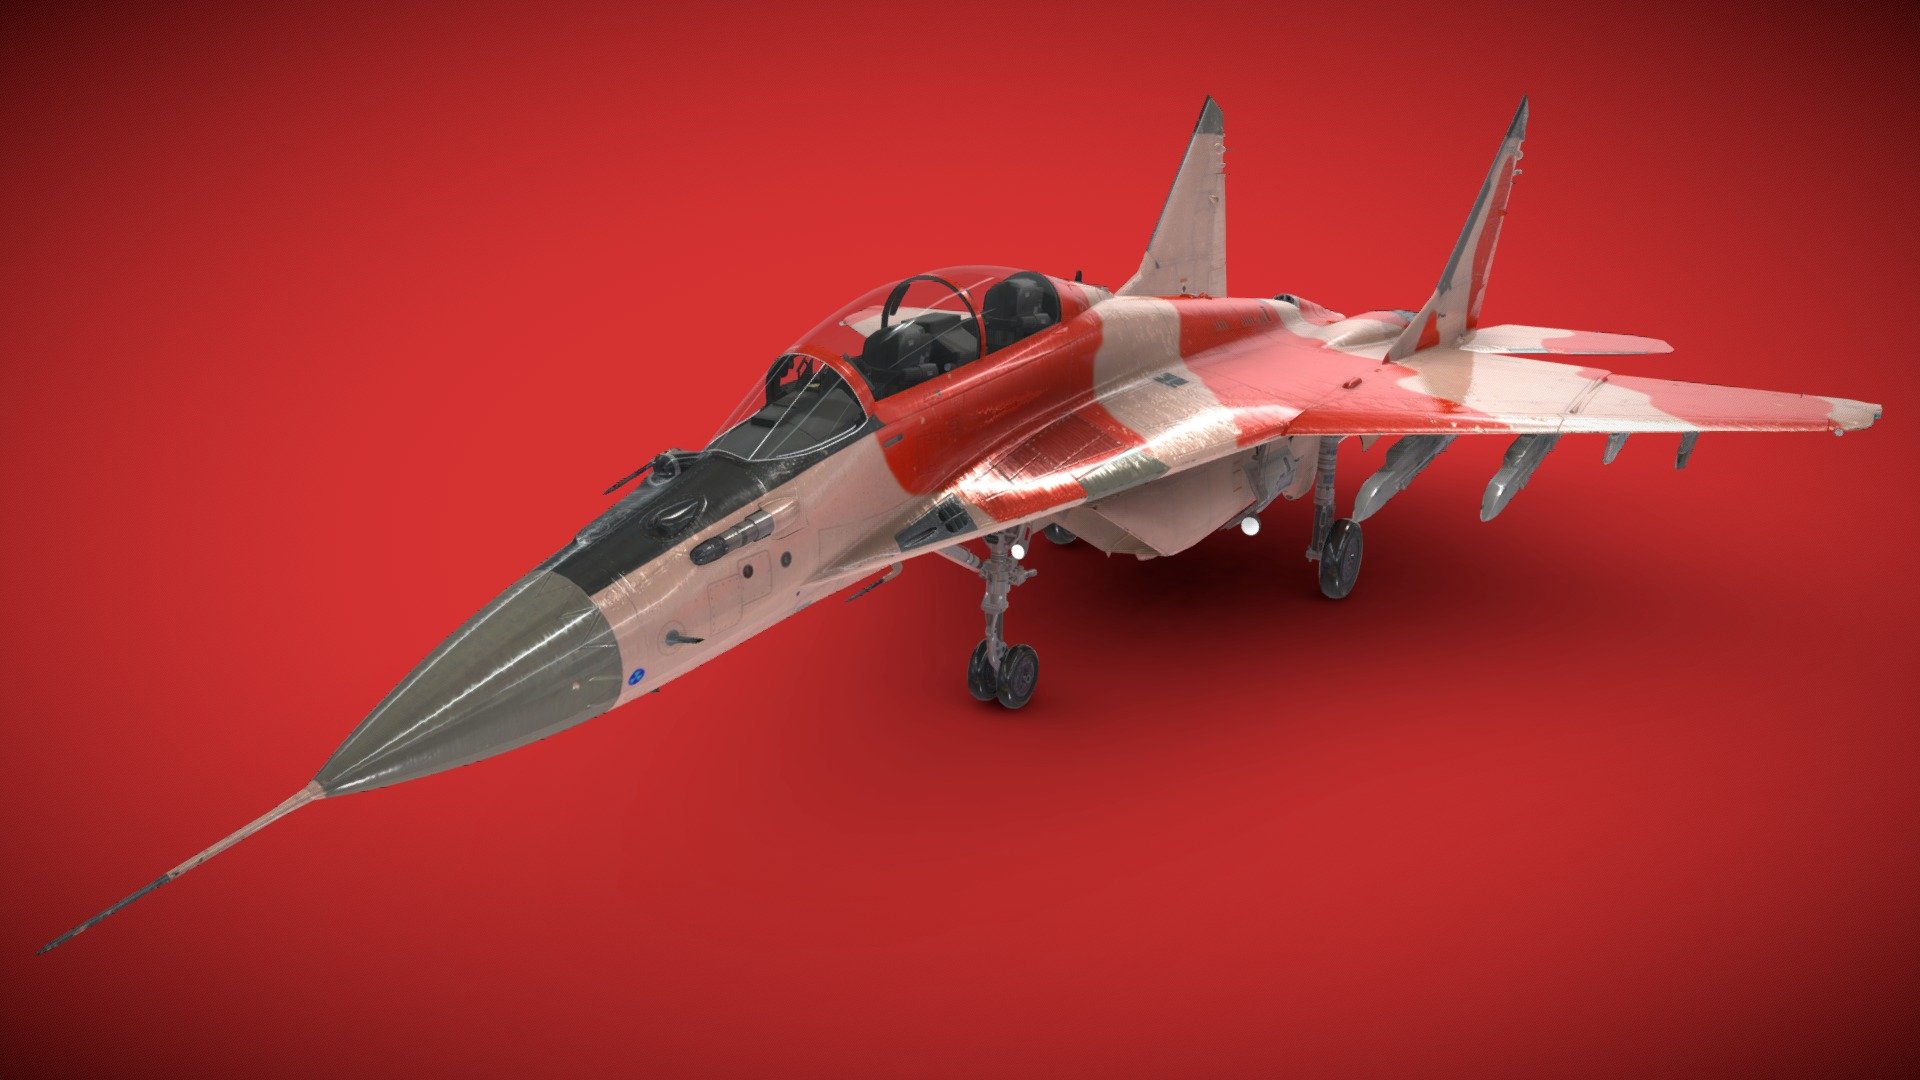 3d modle of mig-35-fighter-jet
mig-35-fighter-jet 
army jet
best fighter jet
air fighter
best performance - 3d modle of mig-35-fighter-jet - Download Free 3D model by BRO (@musawork786) 3d model